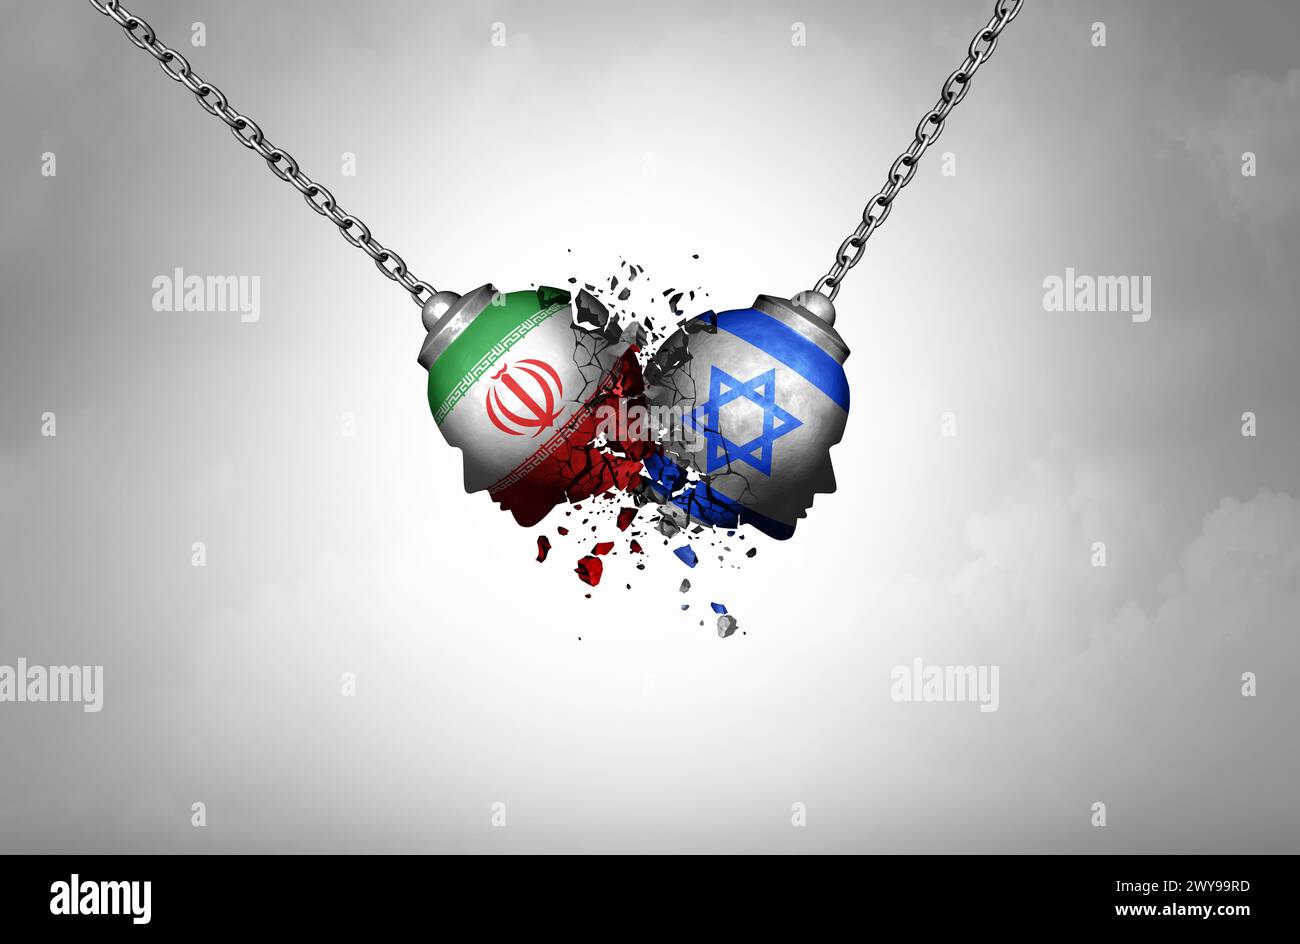 Guerra israeliana iraniana e Iran crisi militare israeliana come confronto armato o conflitto per procura iraniana israeliana con due governi opposti in un di Foto Stock